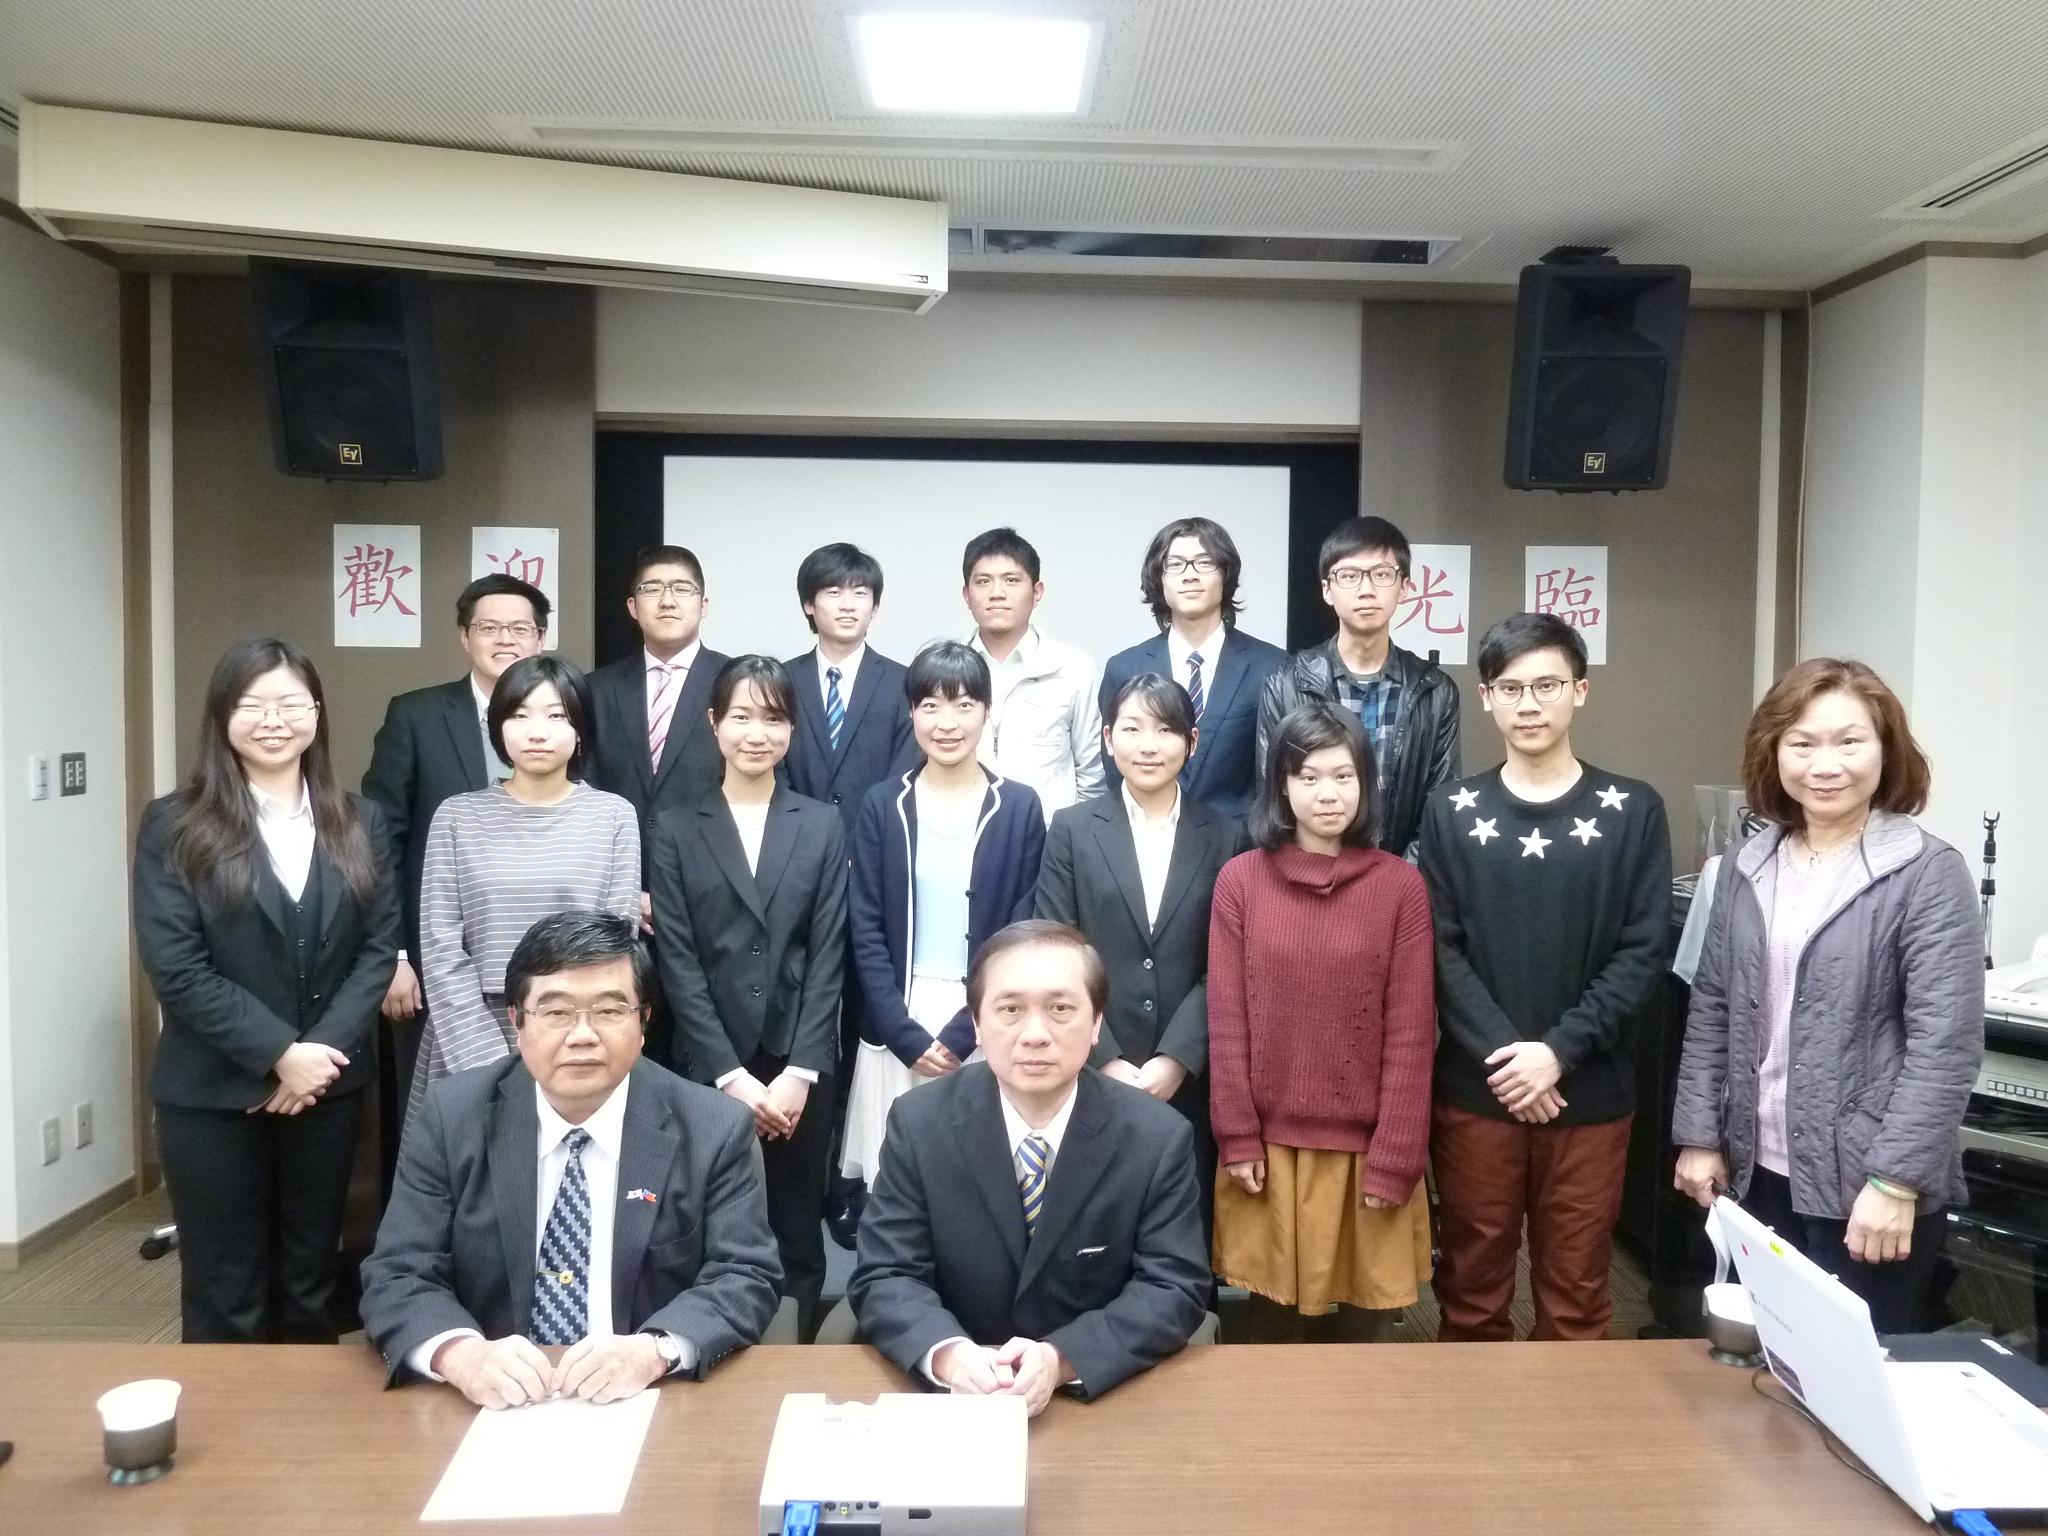 3/9戎総領事が「台湾人が尊敬する日本精神」を題として講演会を行った。当弁事処のお招きにより日本人大学生と台湾留学生達が参加した。